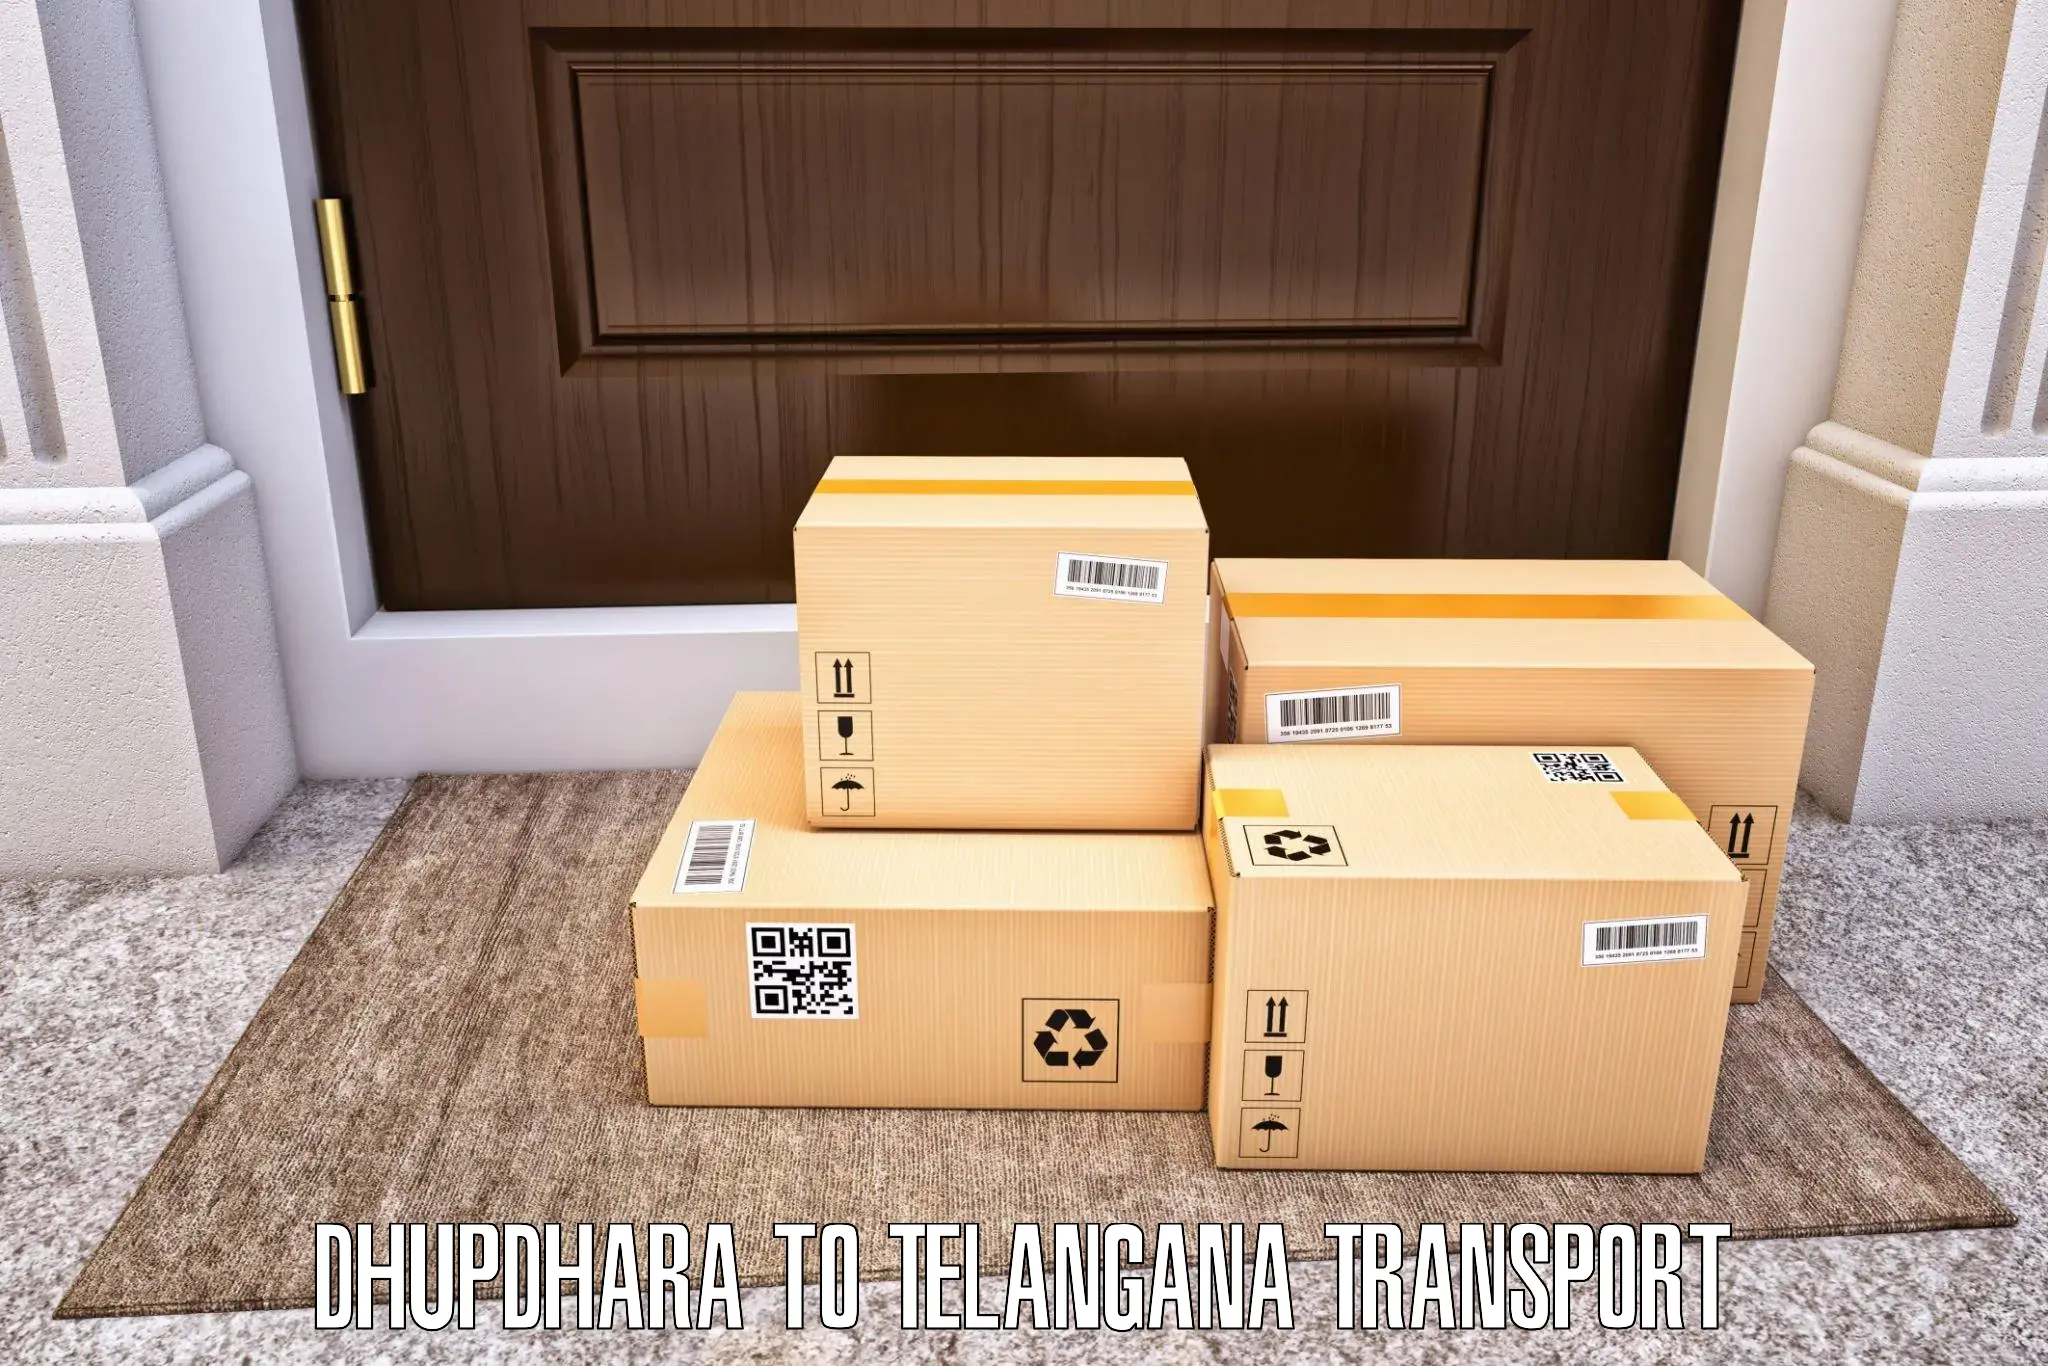 Luggage transport services Dhupdhara to Kaghaznagar